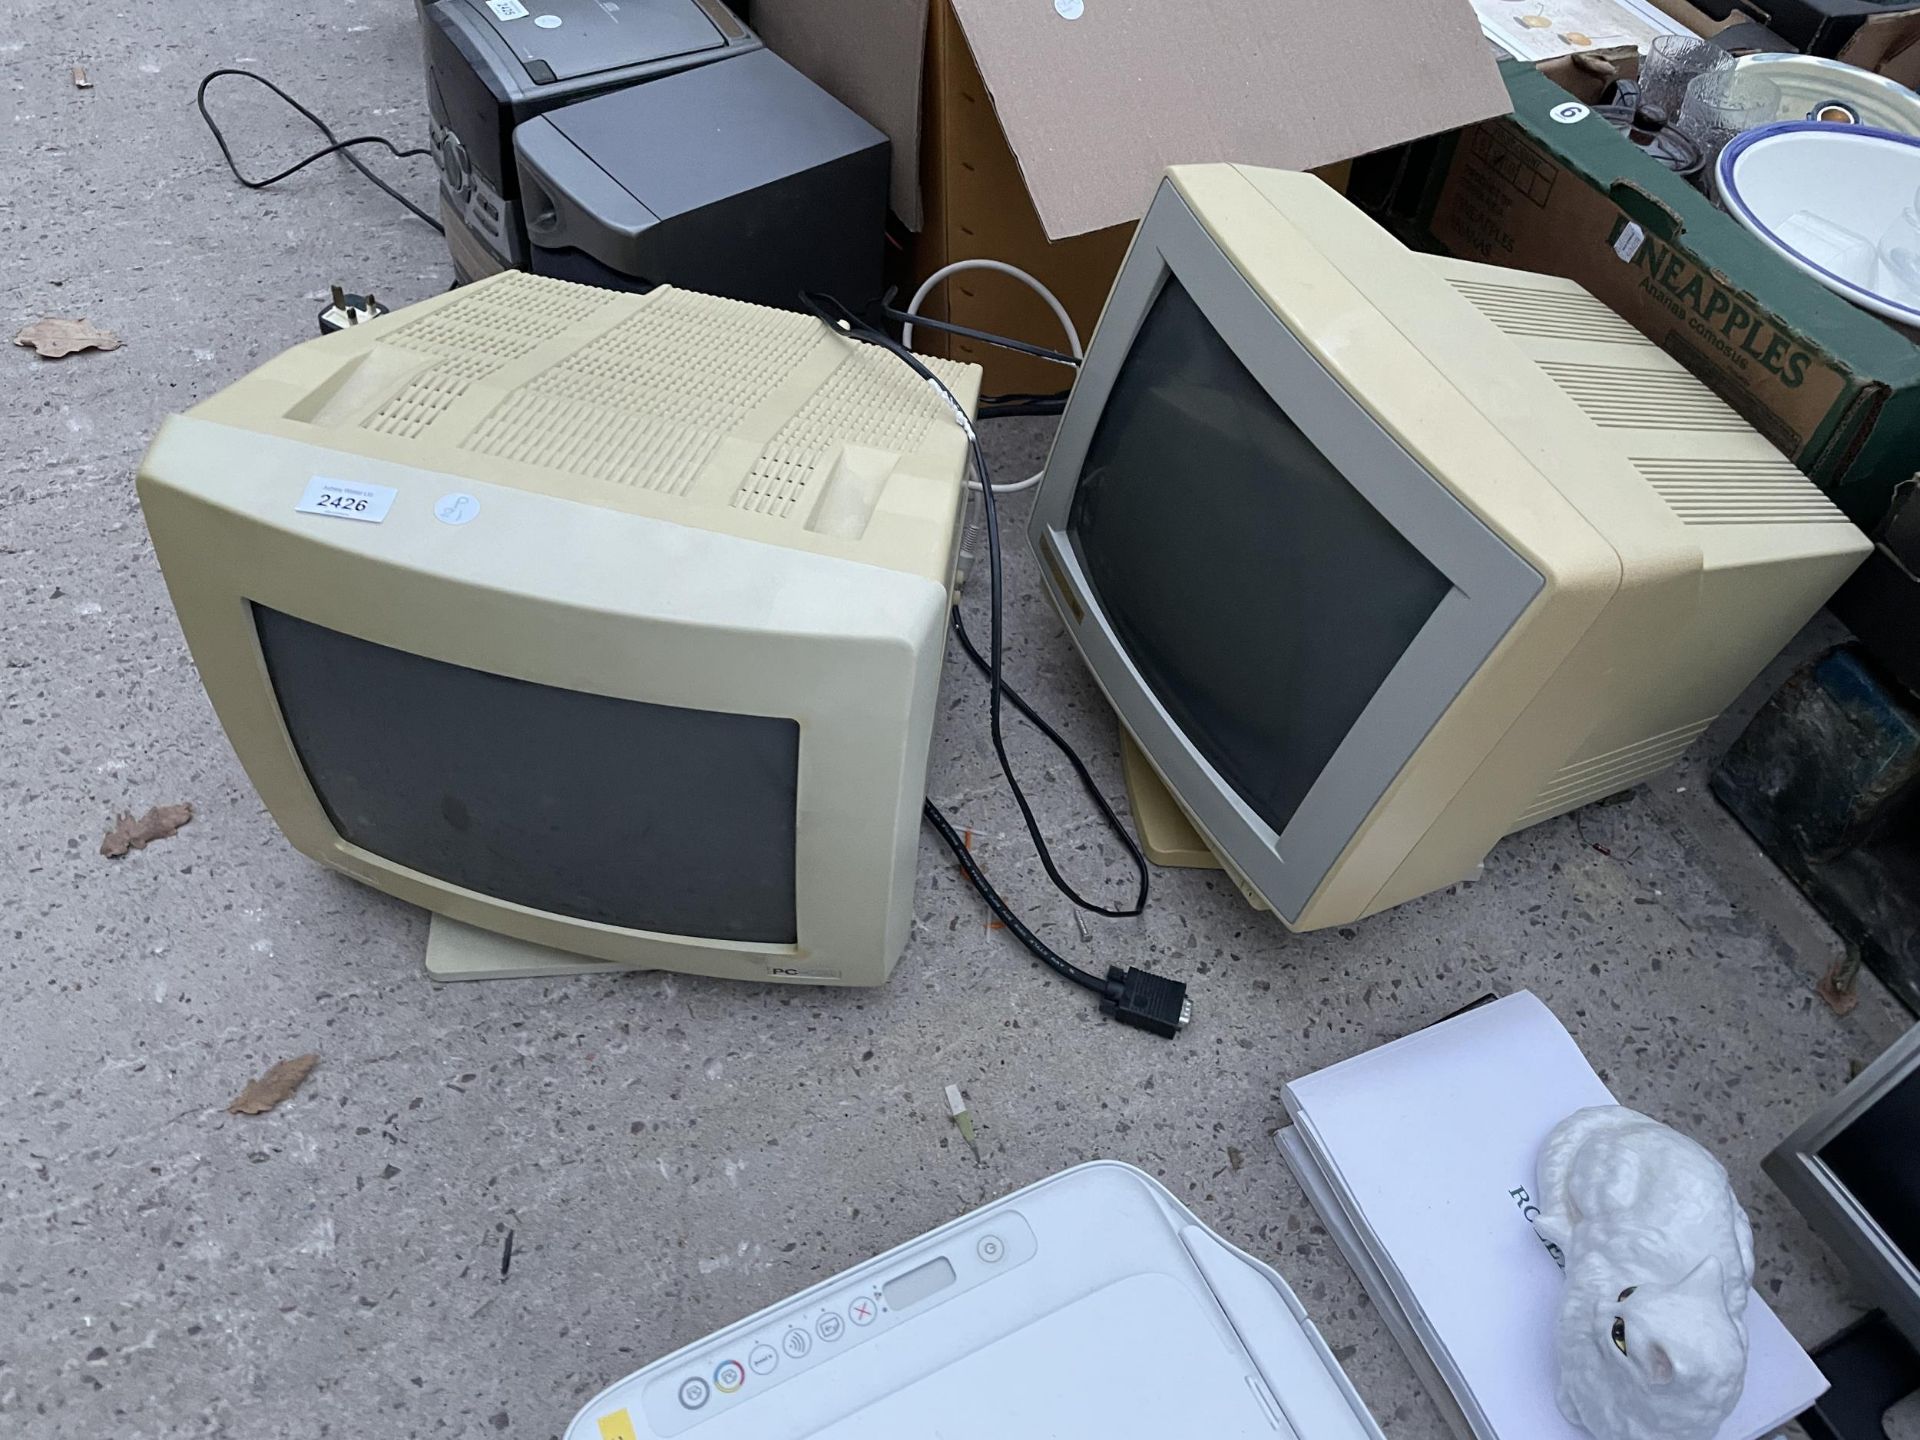 TWO RETRO COMPUTER MONITORS